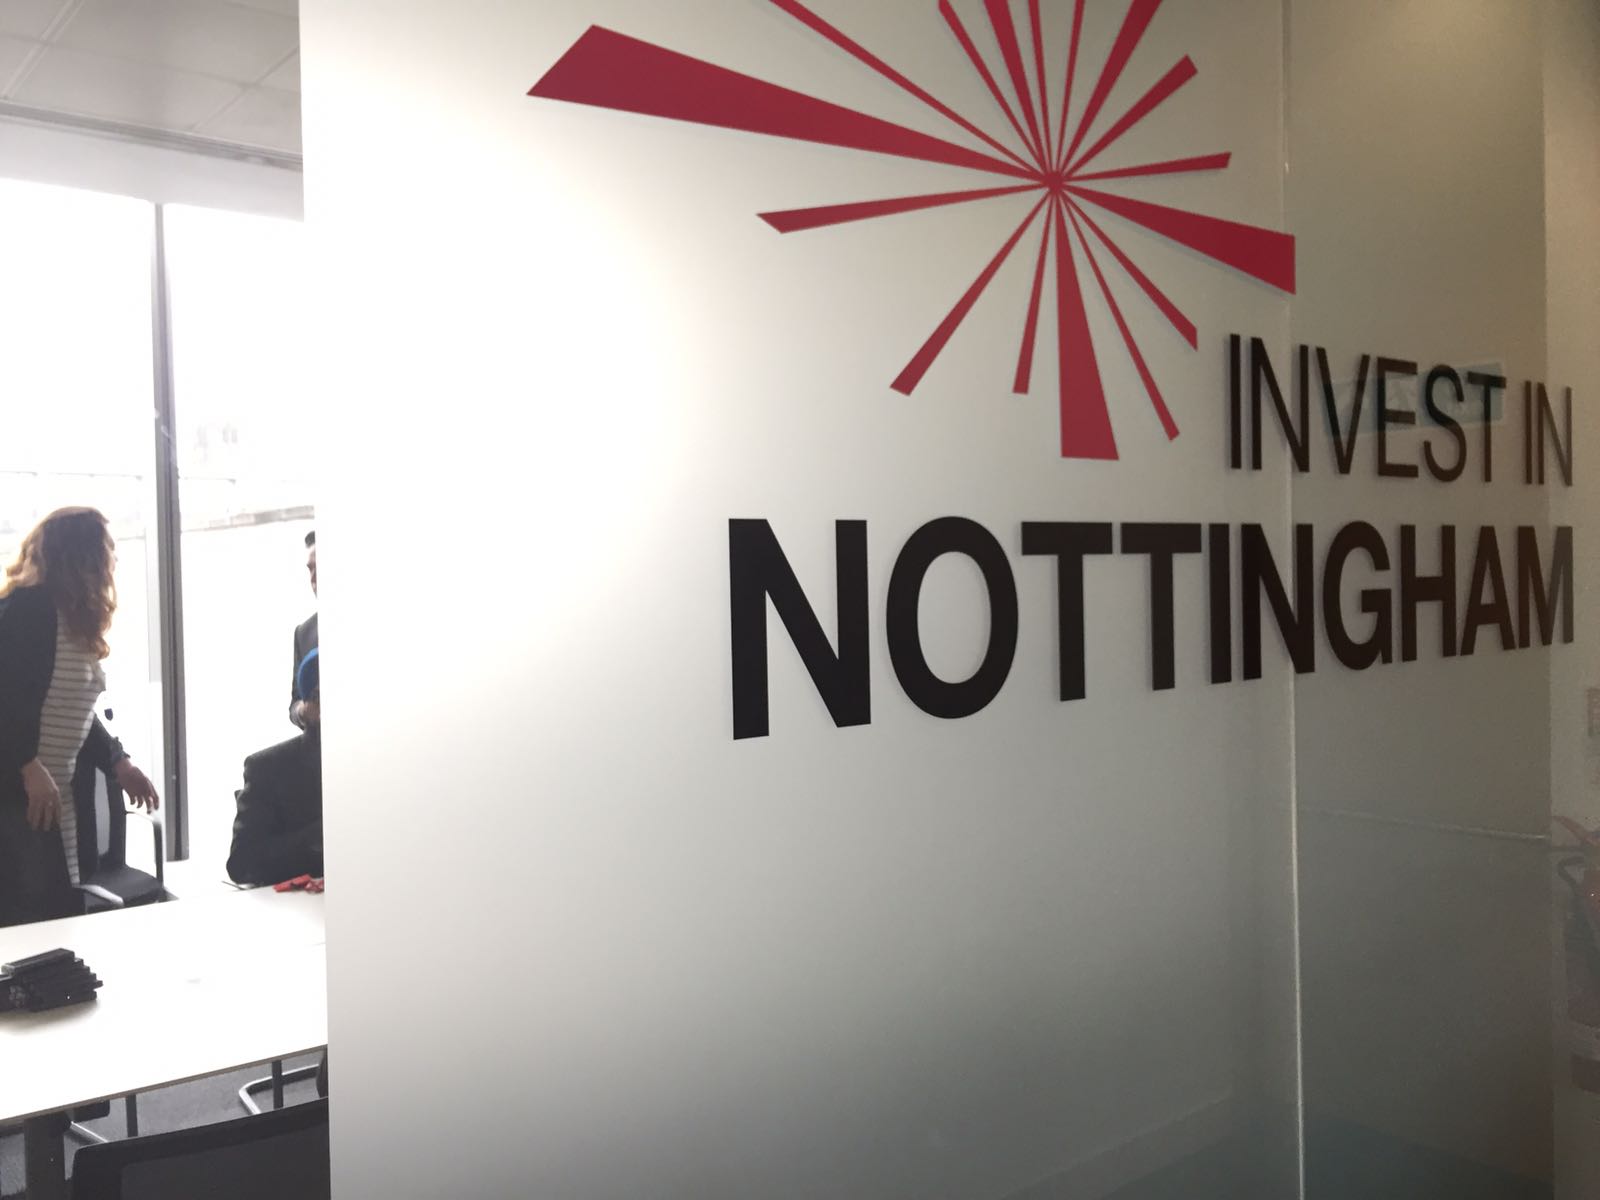 Invest in Nottingham